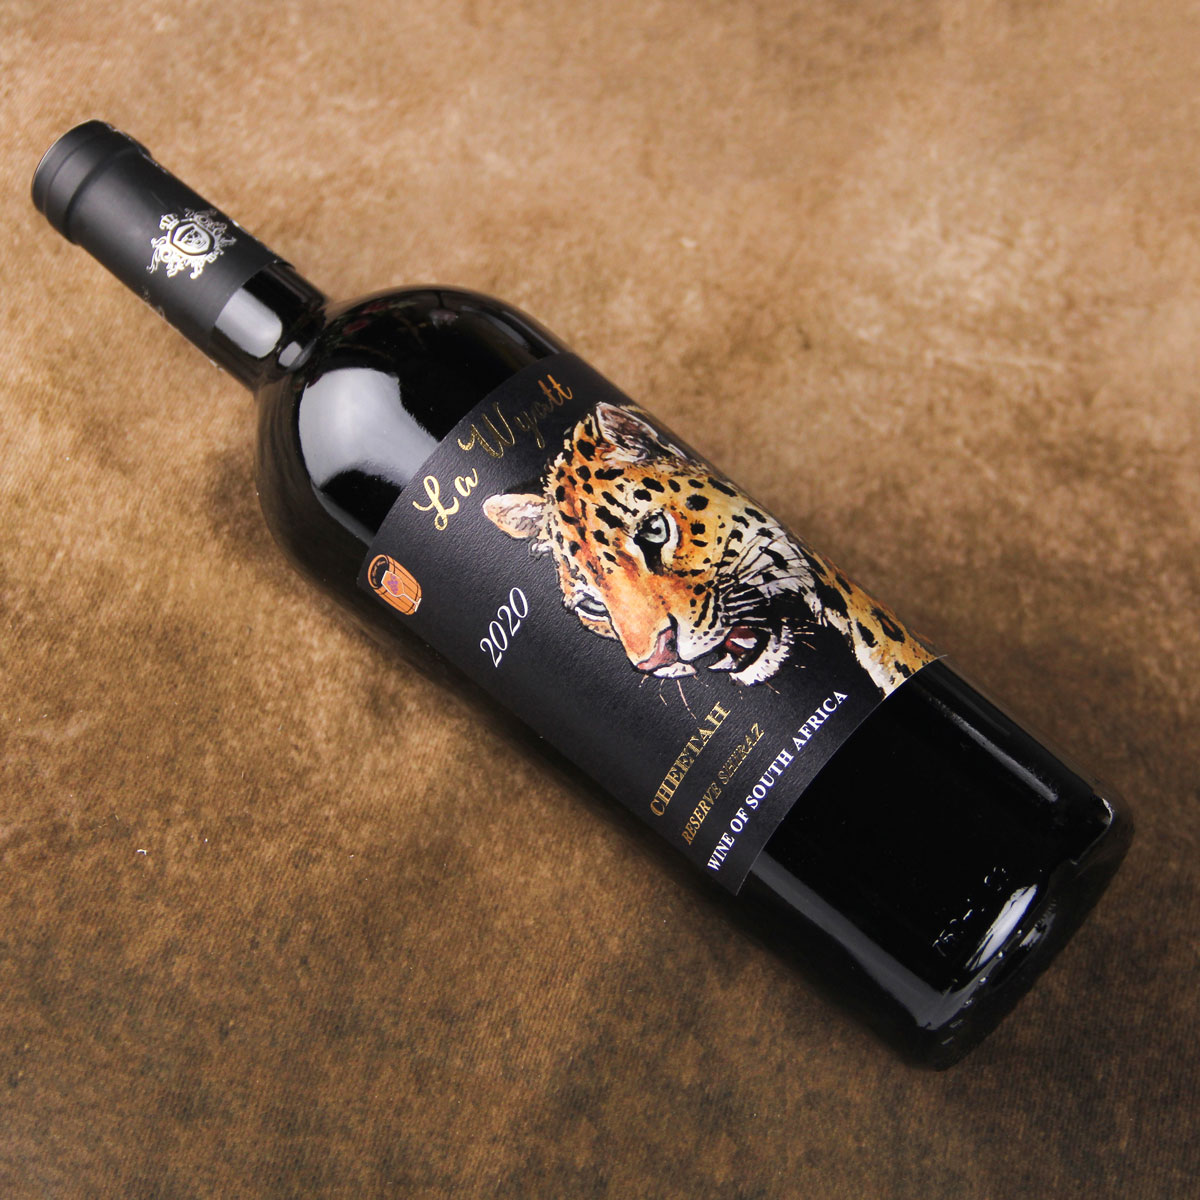 南非莱悦猎豹珍藏西拉红葡萄酒